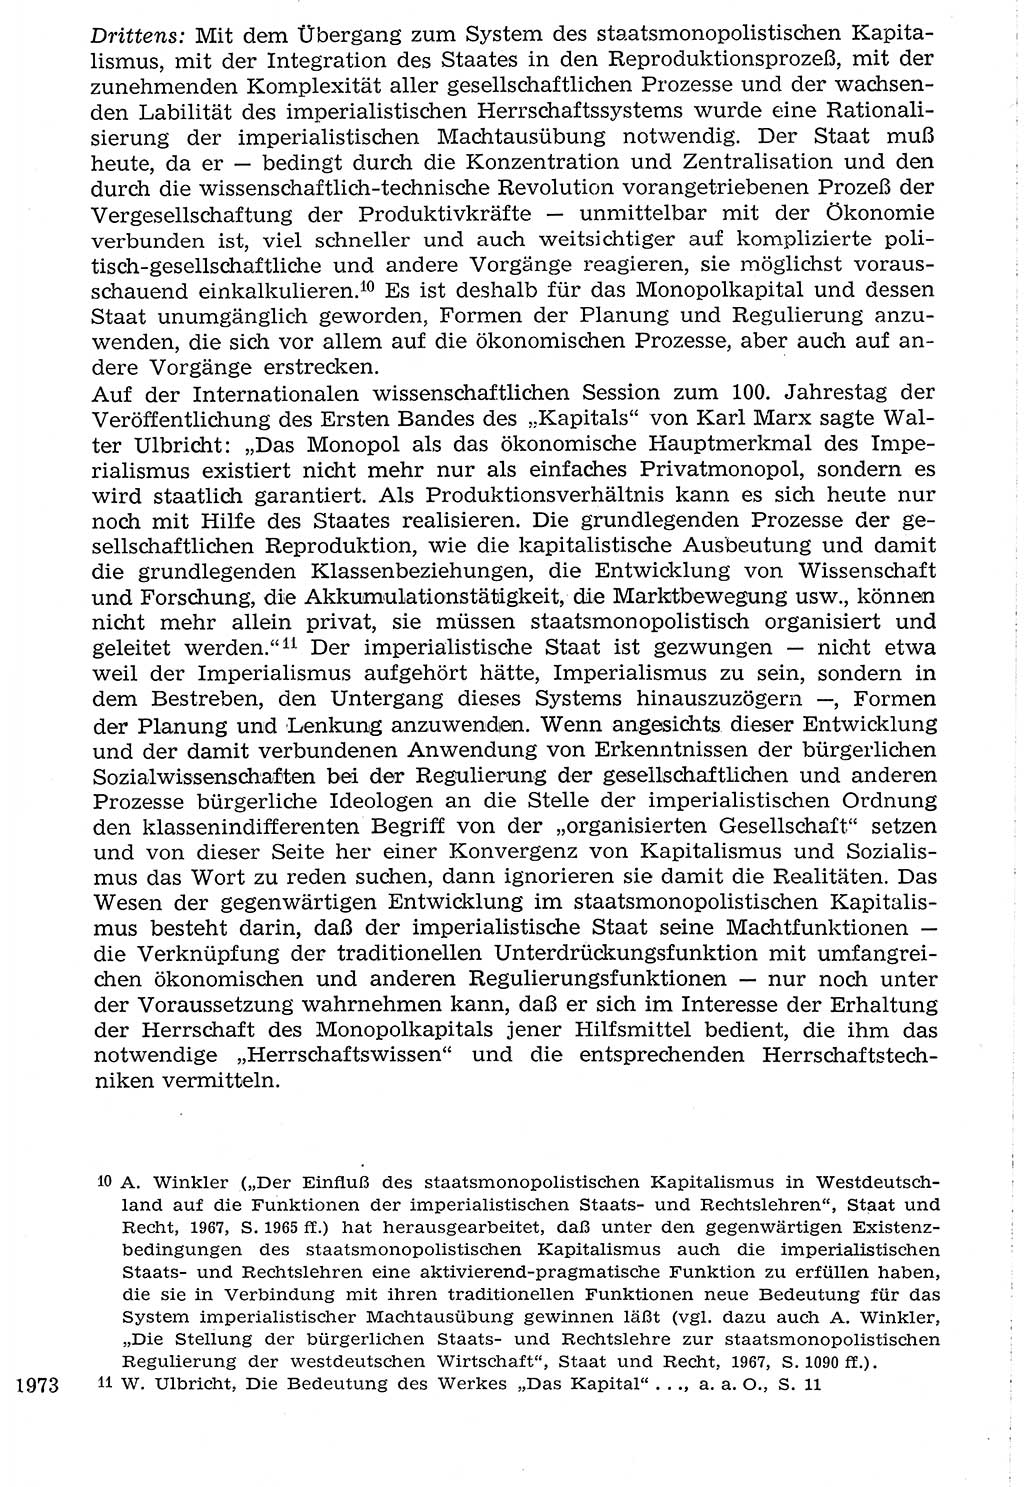 Staat und Recht (StuR), 17. Jahrgang [Deutsche Demokratische Republik (DDR)] 1968, Seite 1973 (StuR DDR 1968, S. 1973)